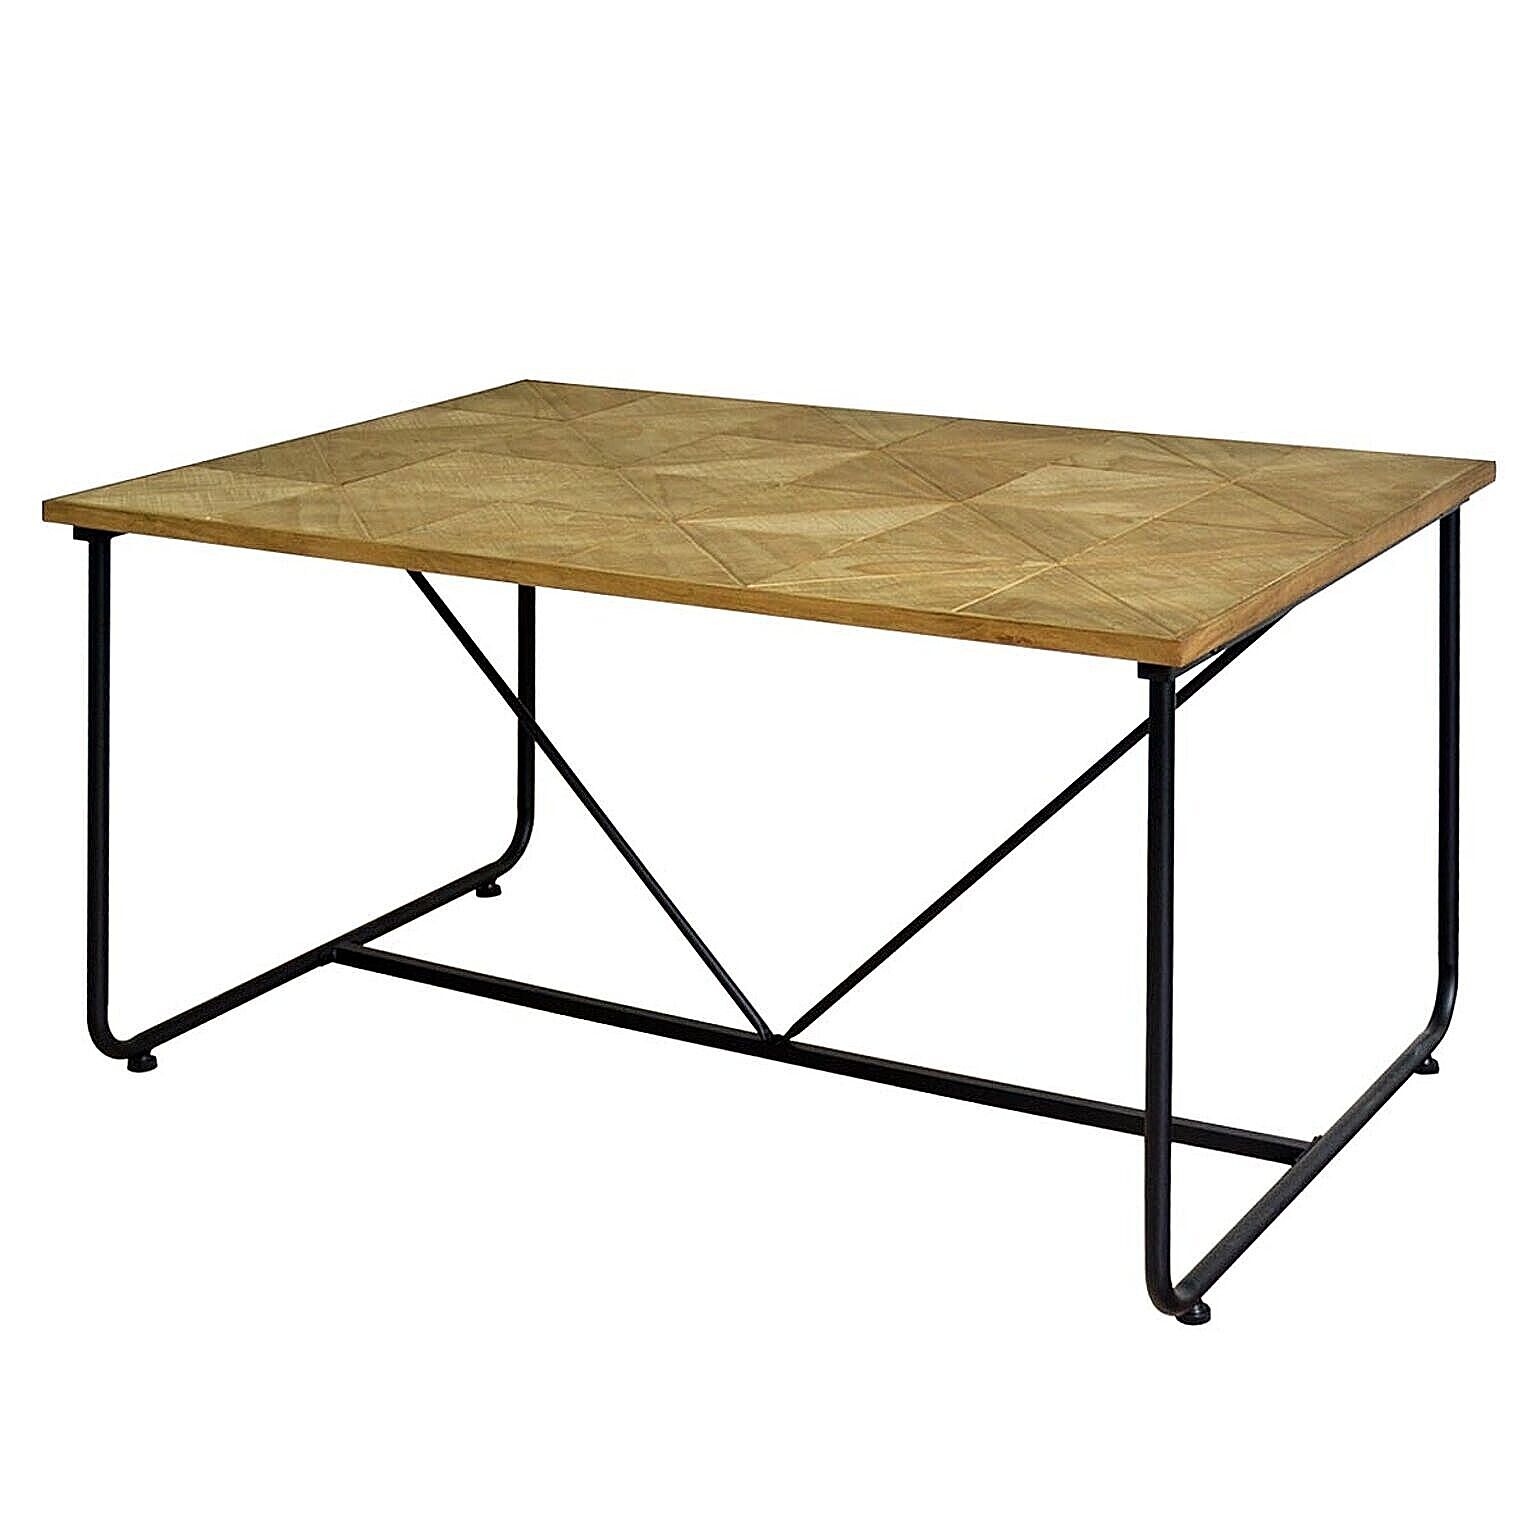 STALE ダイニングテーブル 幅123cm 木製 テーブル アンティーク風